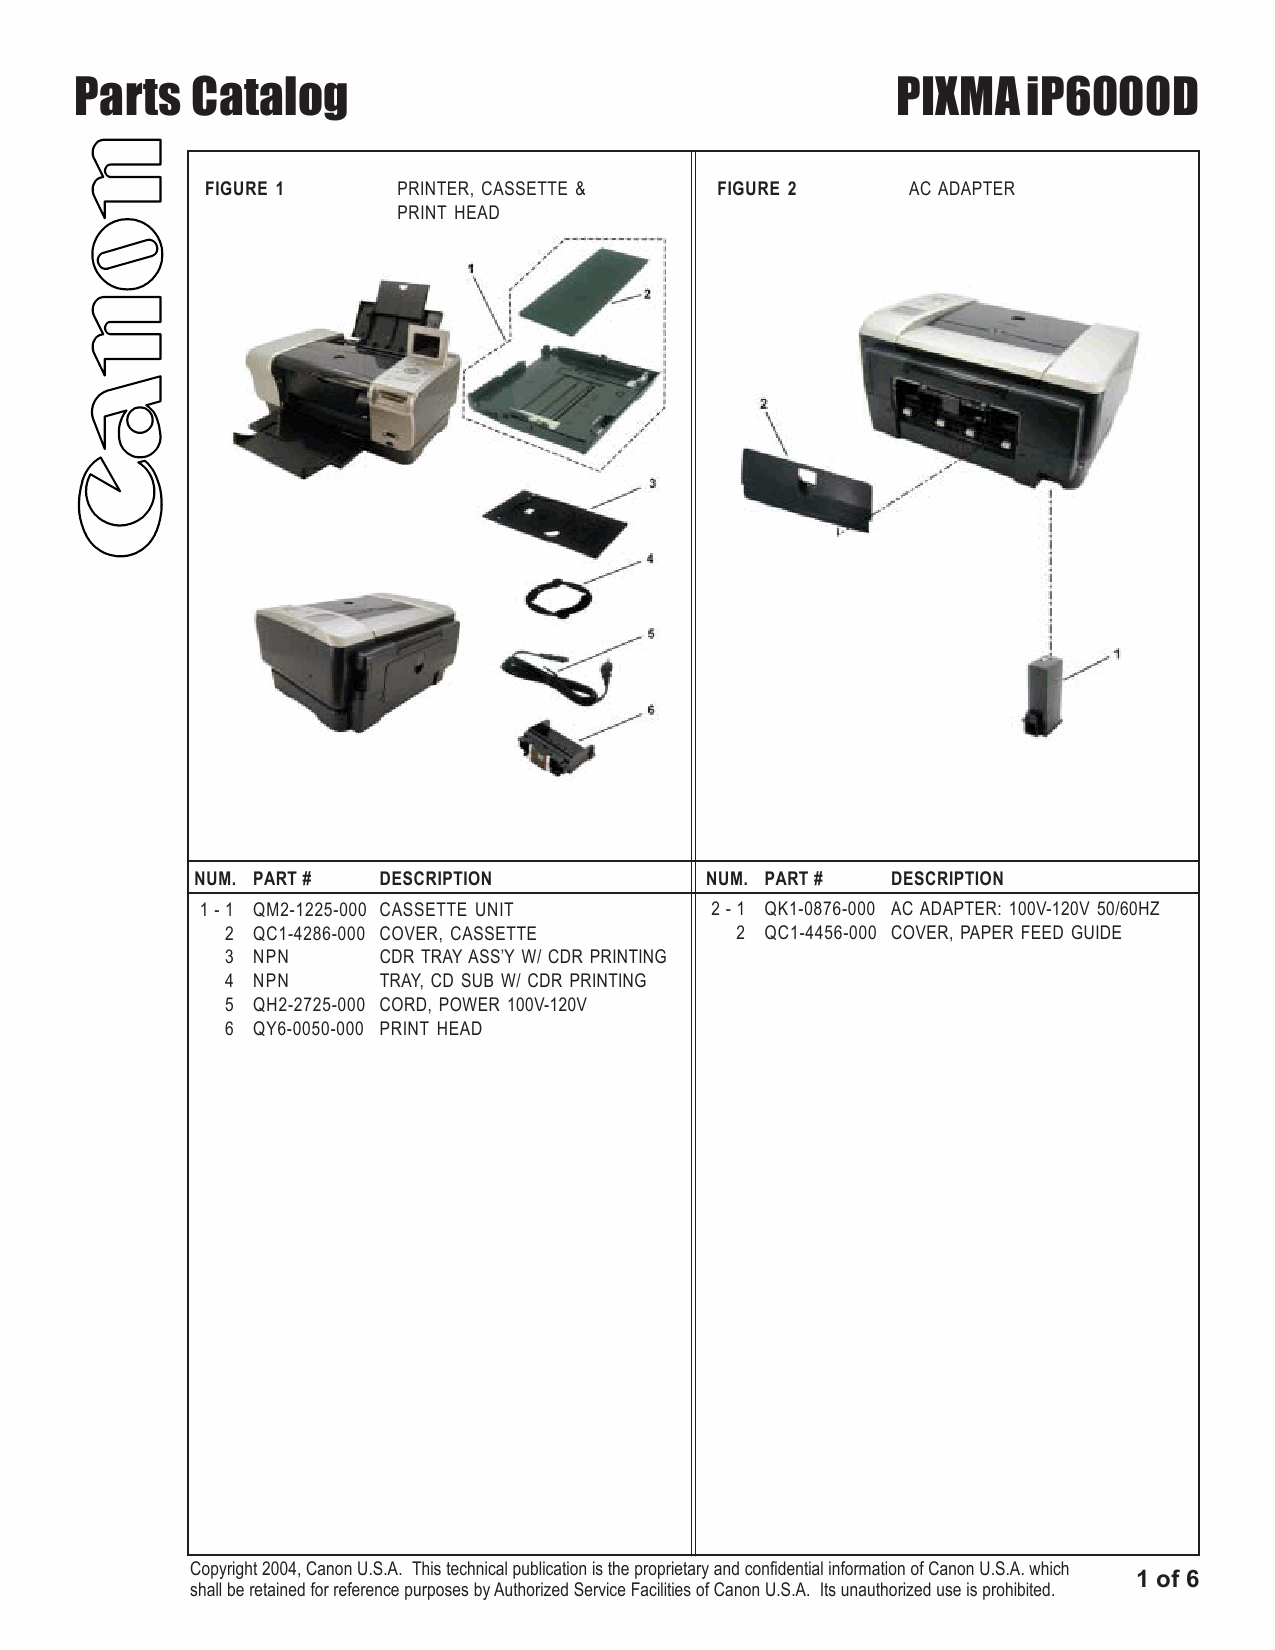 Canon PIXMA iP6000D Parts Catalog Manual-2